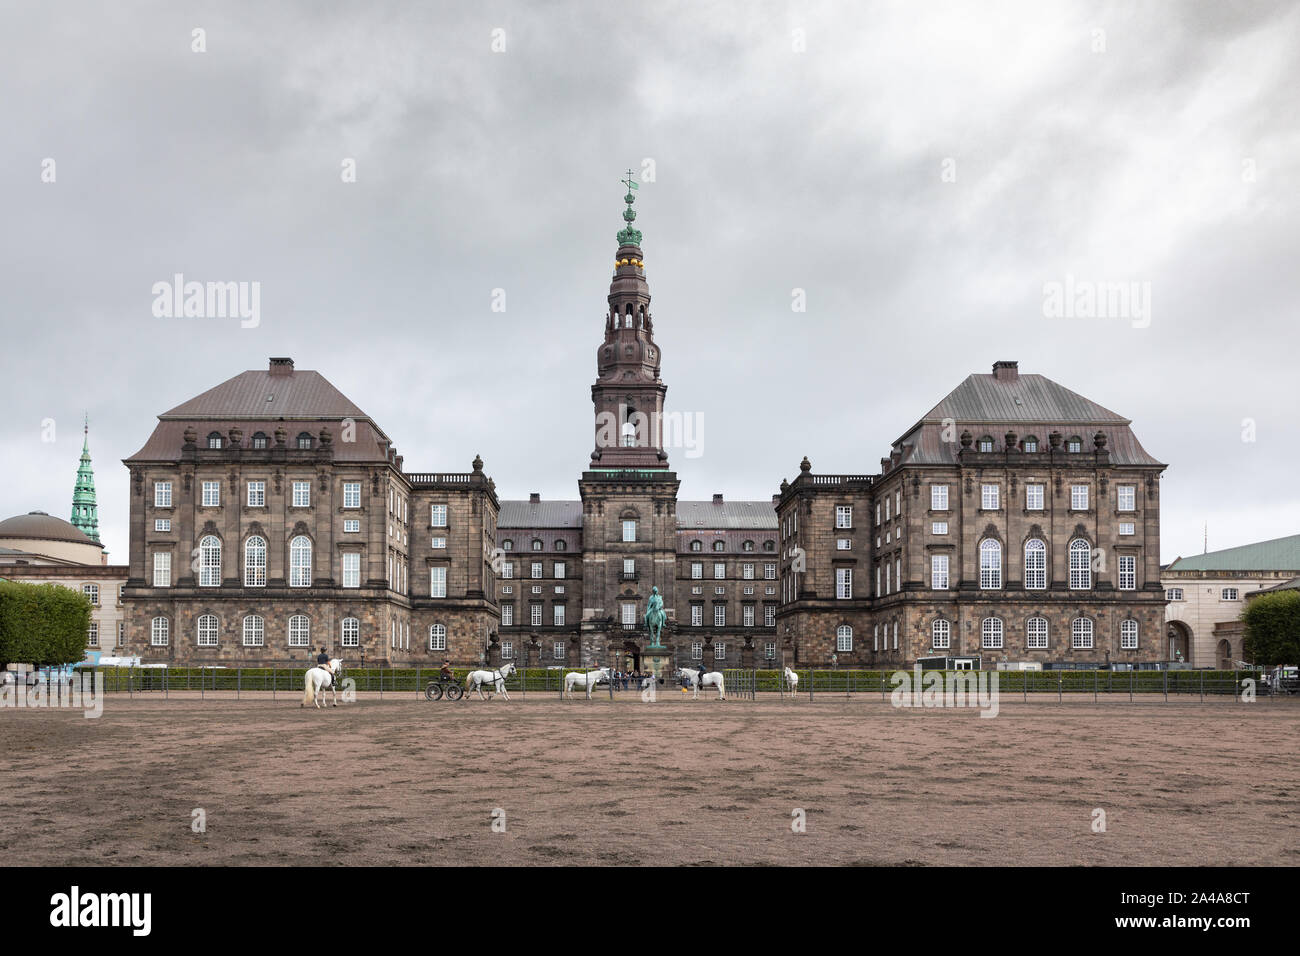 Copenhague, Dinamarca: caballos blancos ejercicio delante de Christiansborg Palace que está situado en el islote de Slotsholmen en la ciudad capital. Foto de stock